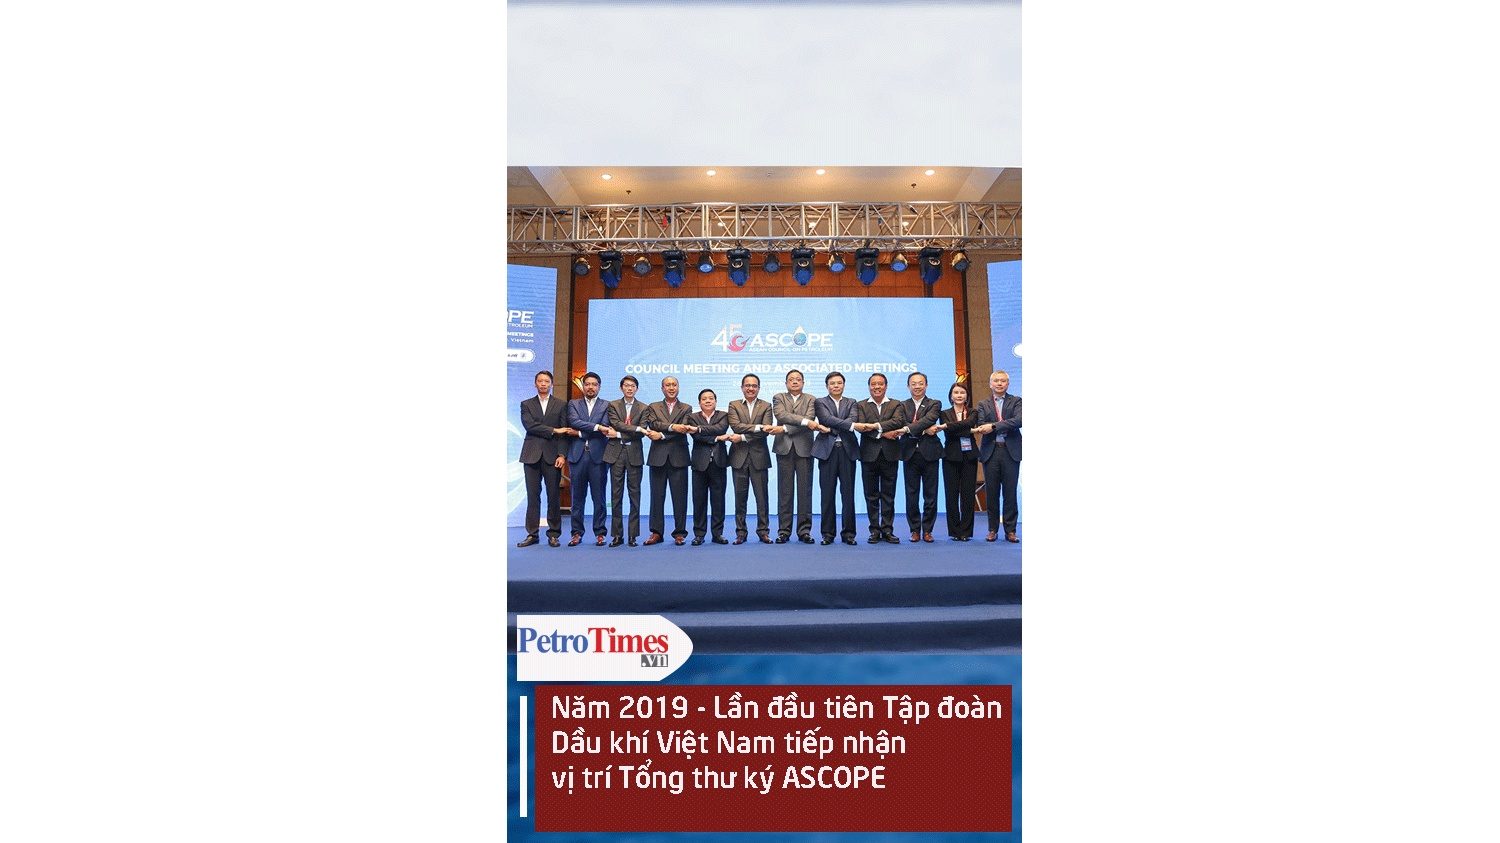 [Video] Năm 2019 - Lần đầu tiên Tập đoàn Dầu khí Việt Nam tiếp nhận vị trí Tổng thư ký ASCOPE